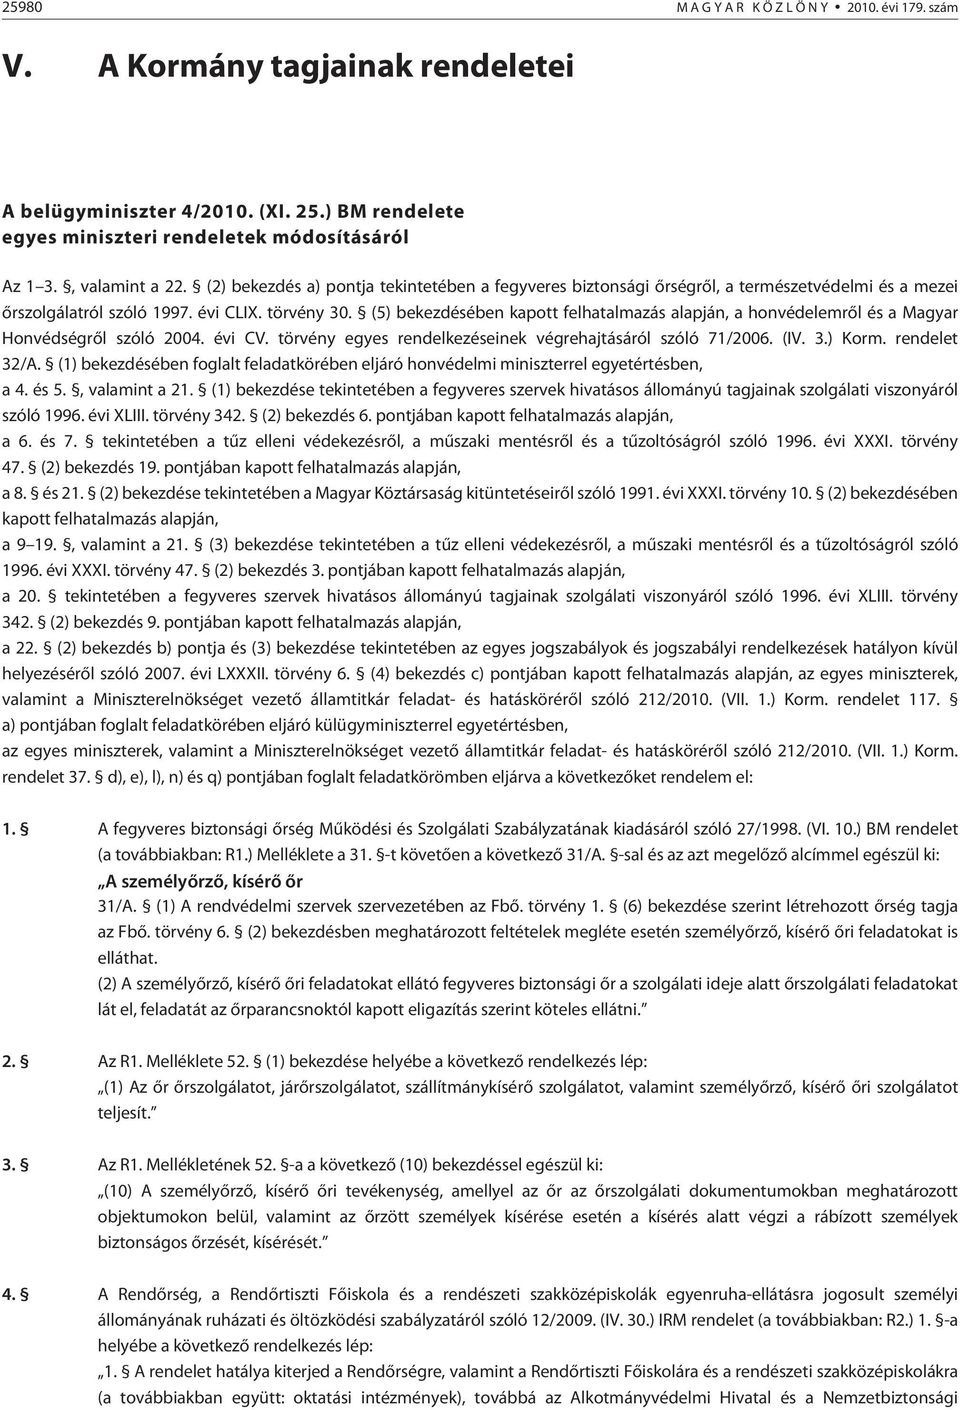 (5) bekezdésében kapott felhatalmazás alapján, a honvédelemrõl és a Magyar Honvédségrõl szóló 2004. évi CV. törvény egyes rendelkezéseinek végrehajtásáról szóló 71/2006. (IV. 3.) Korm. rendelet 32/A.